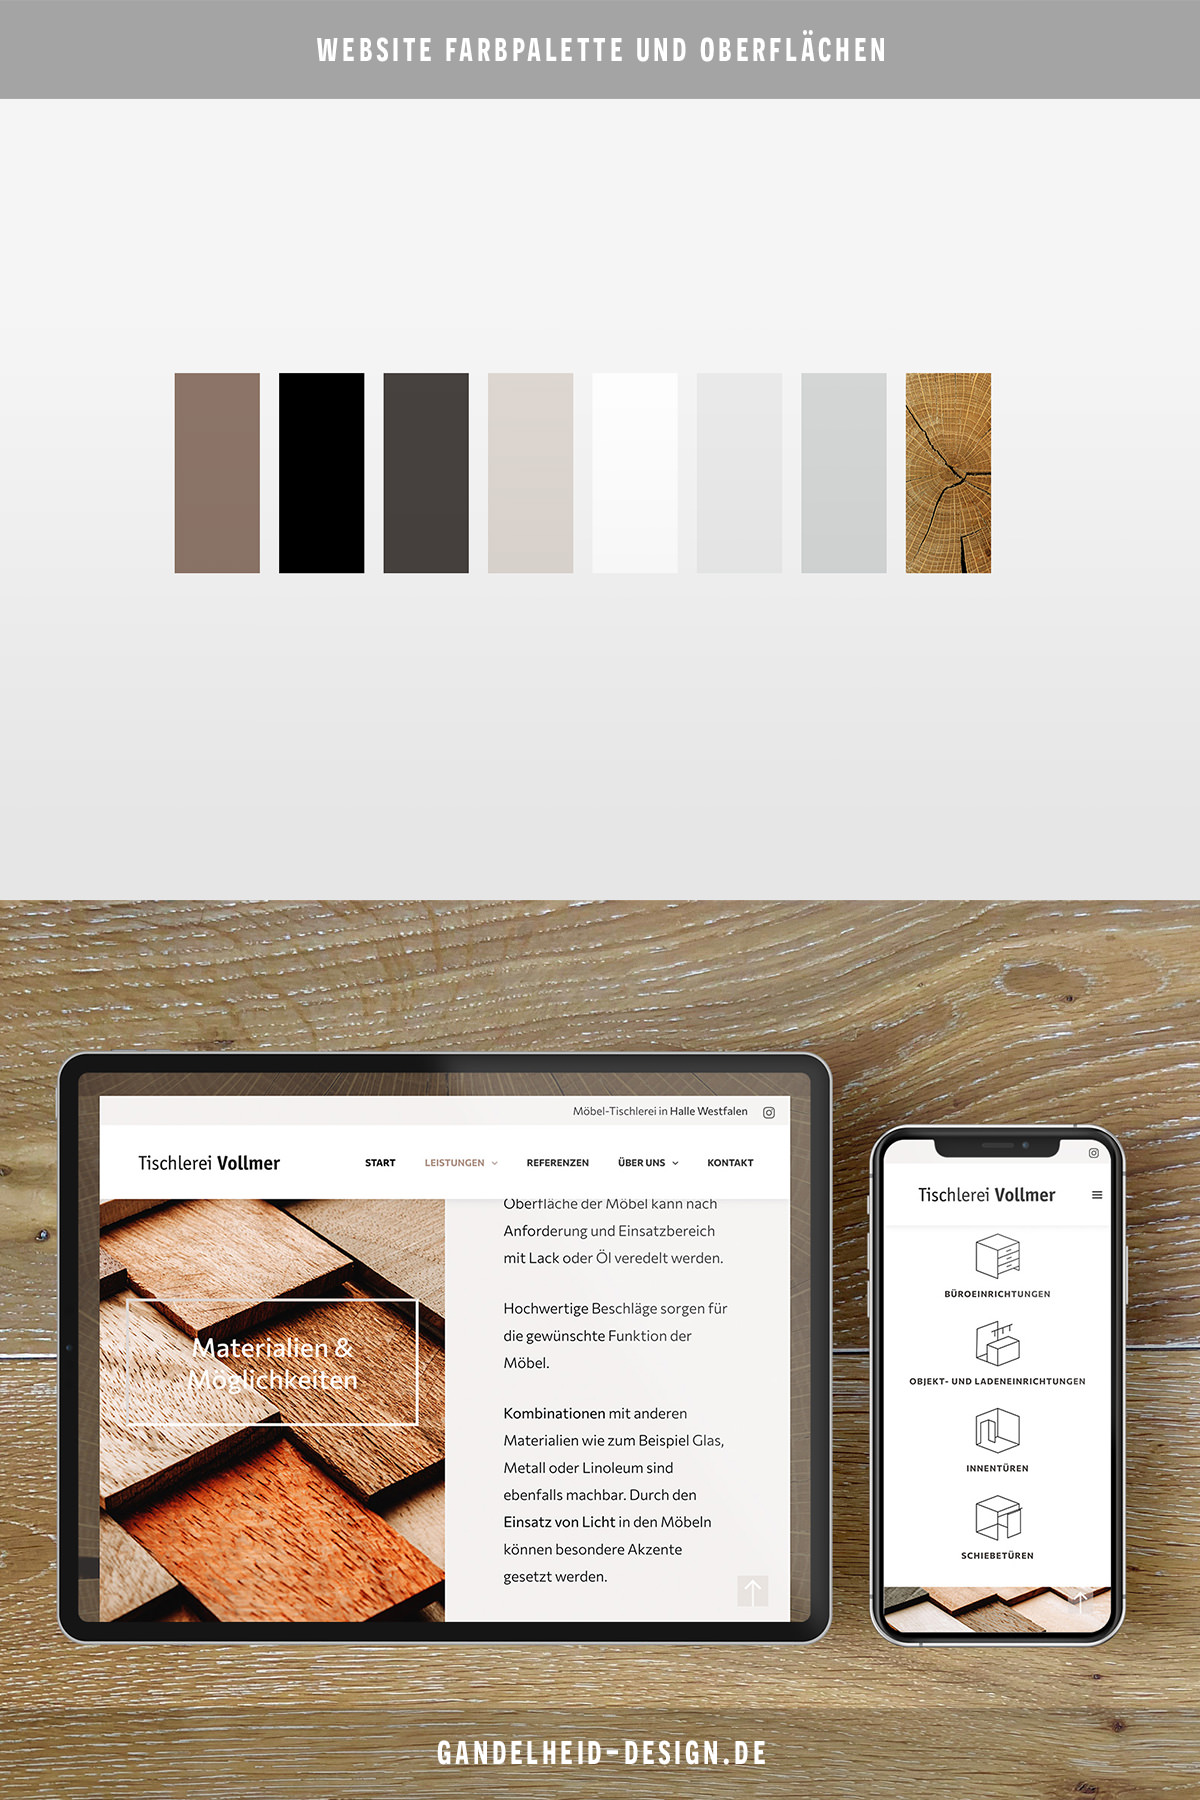 Website für Tischlerei, Farbpalette mit Nicht-Farben und Oberflächen